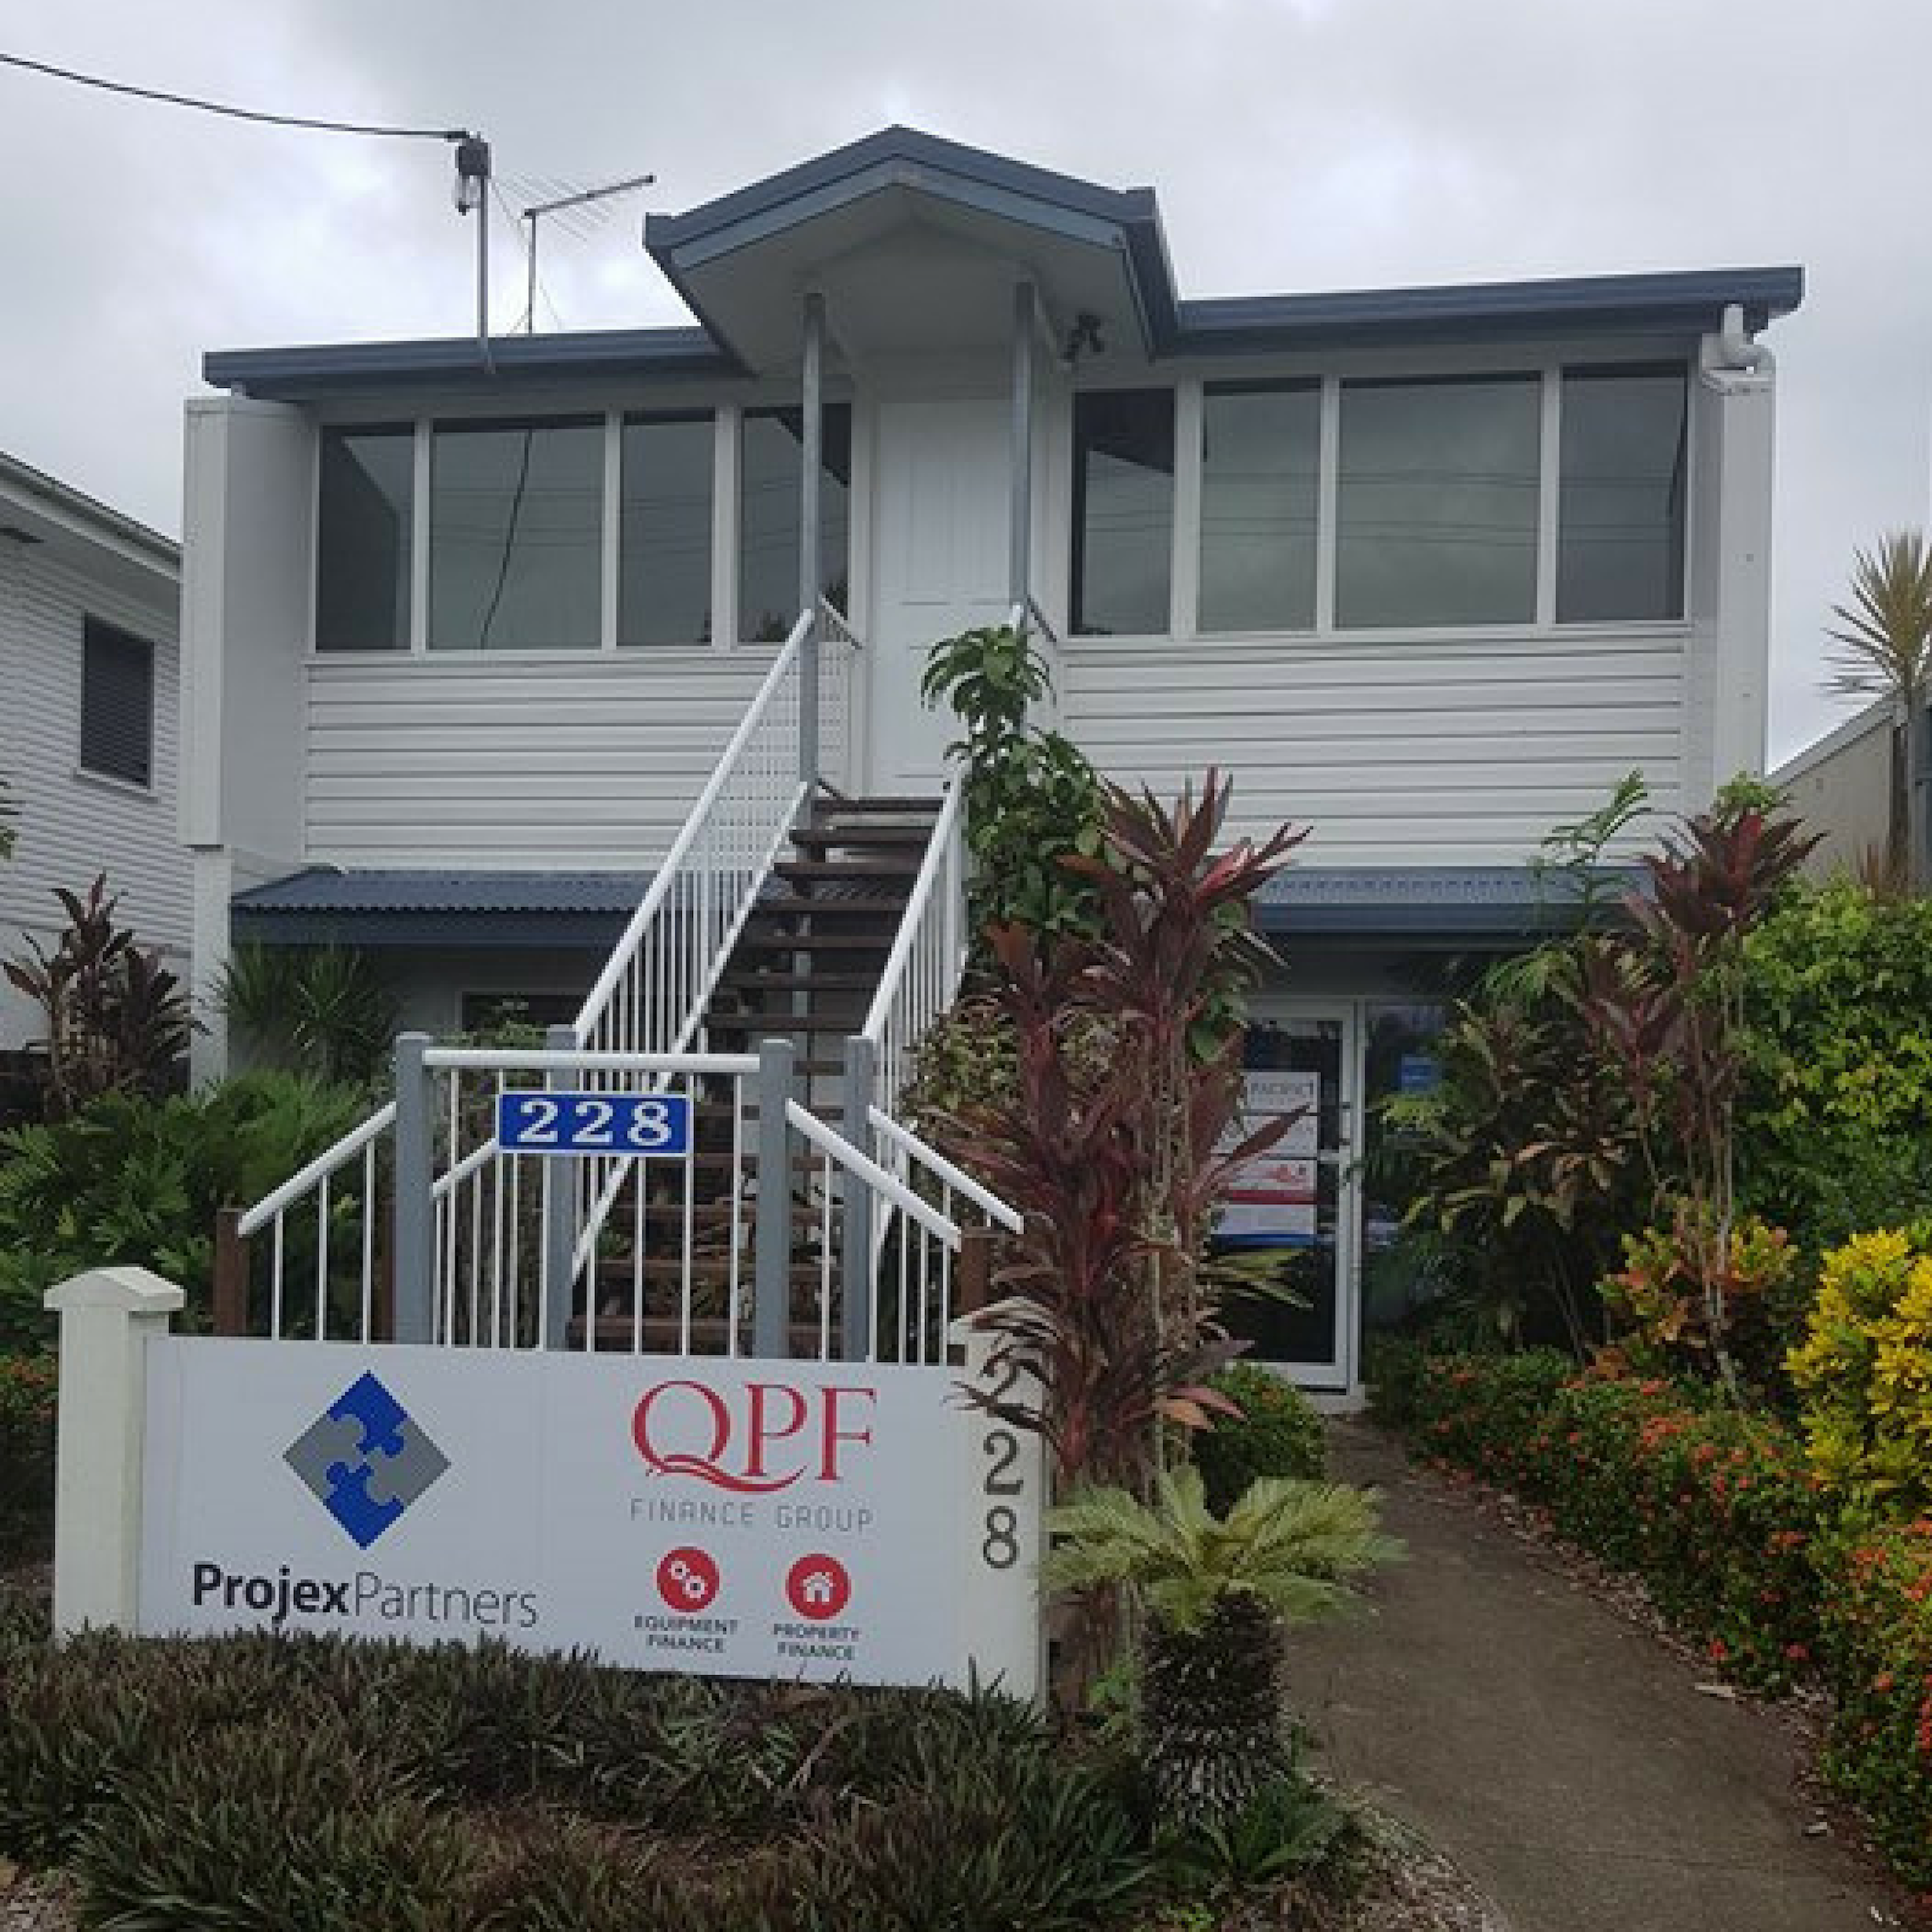 QPF Office